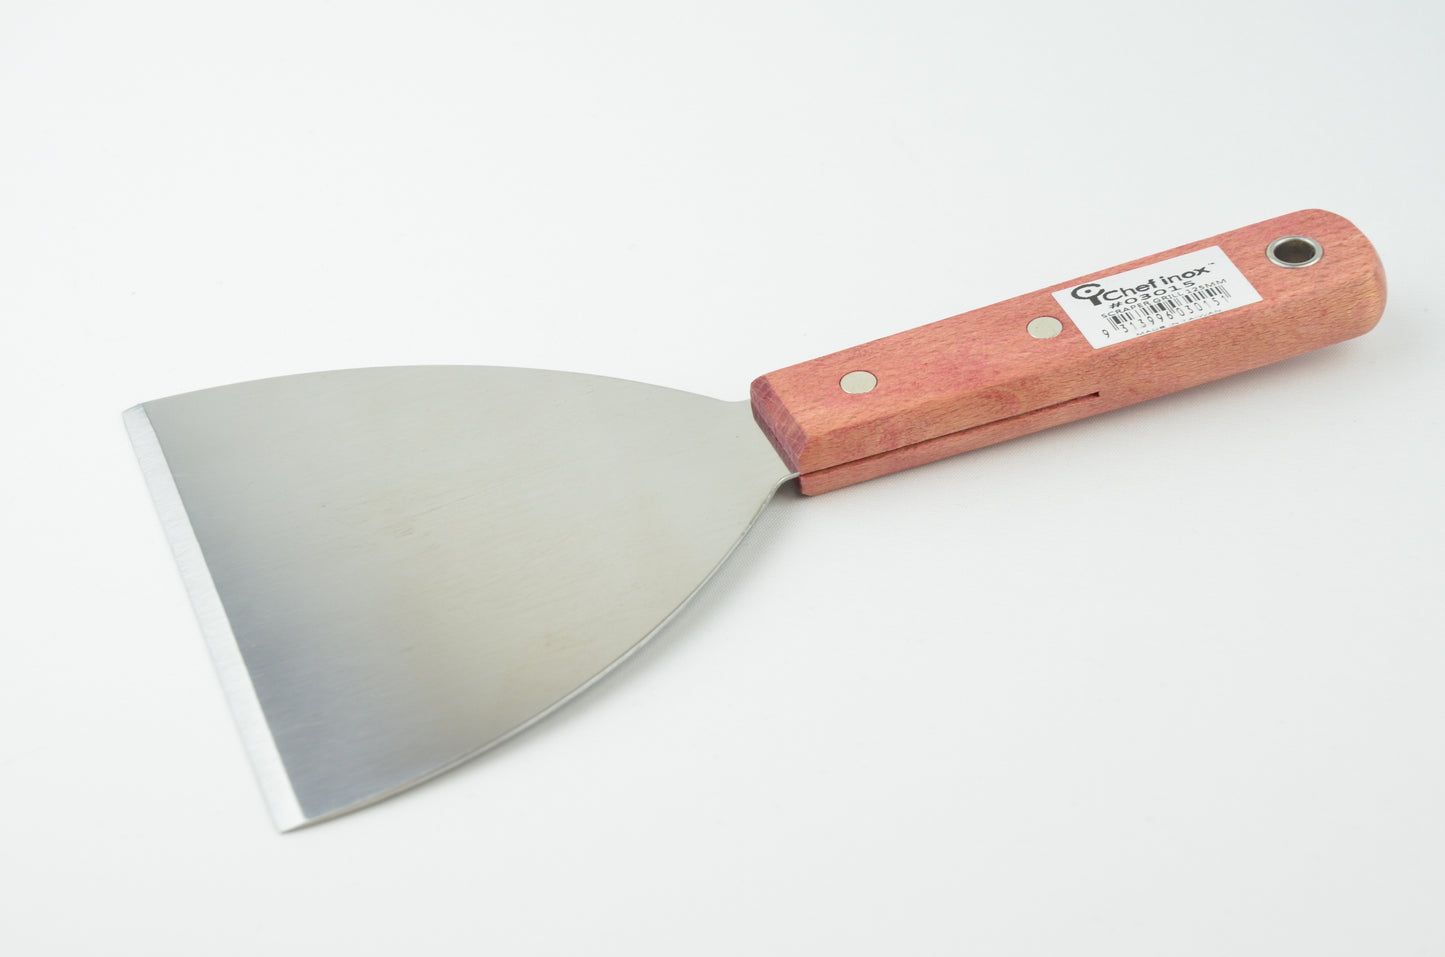 Flat comb knife